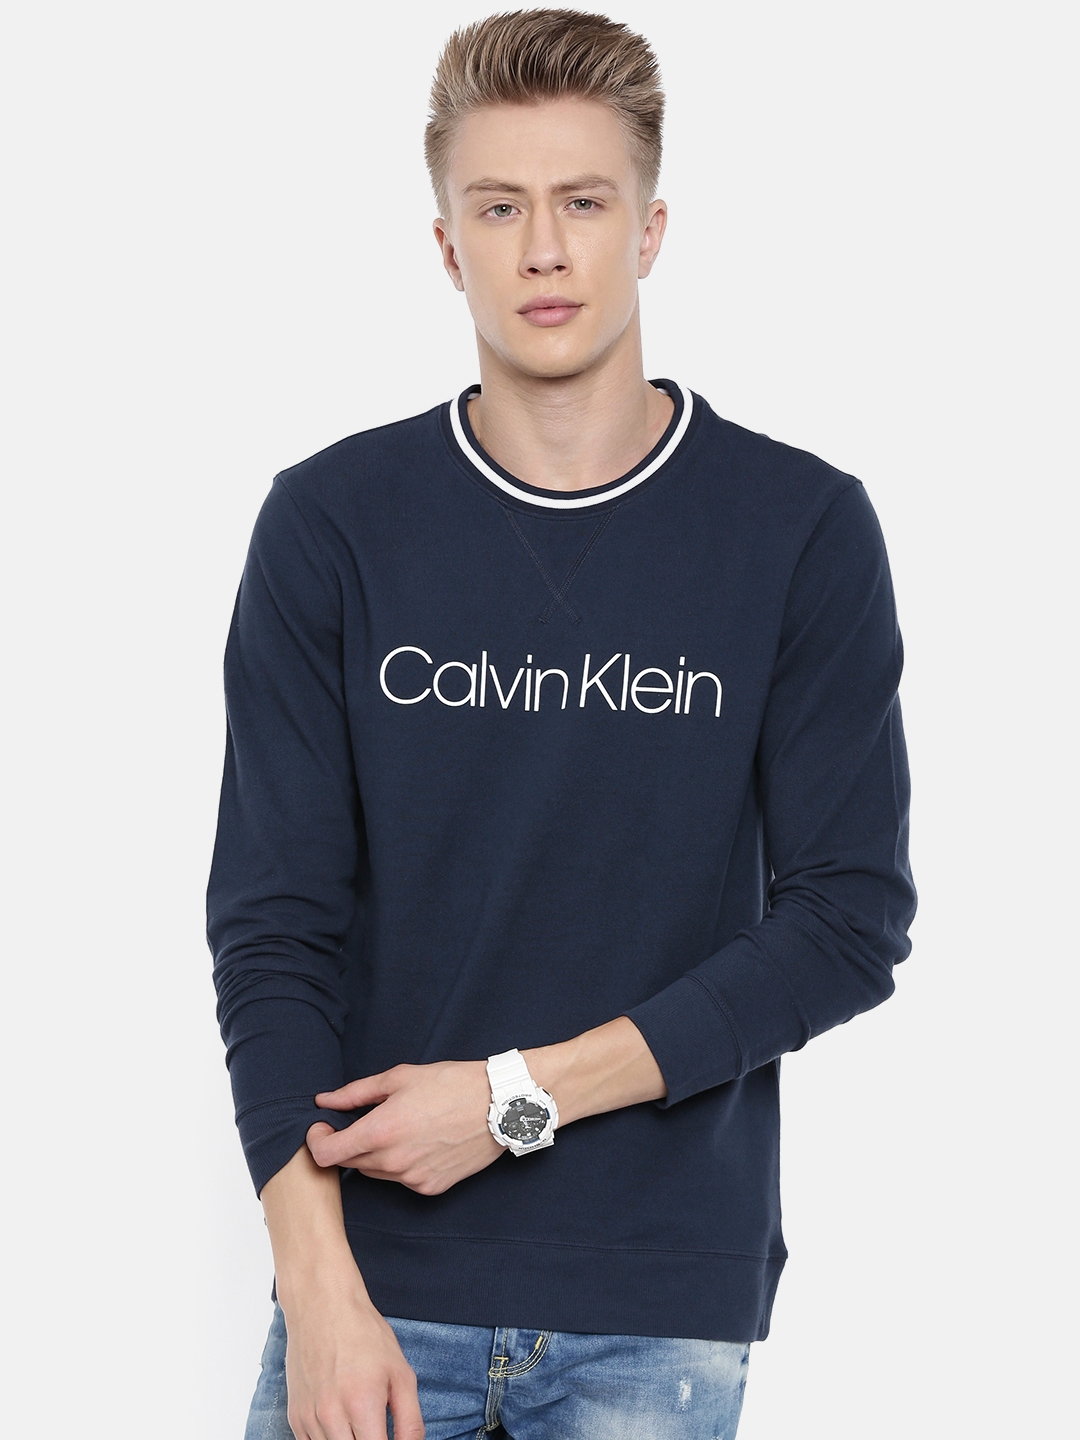 Buy Calvin Klein Underwear Men Navy Blue & White Printed Sweatshirt -  Sweatshirts for Men 9276053 | Myntra